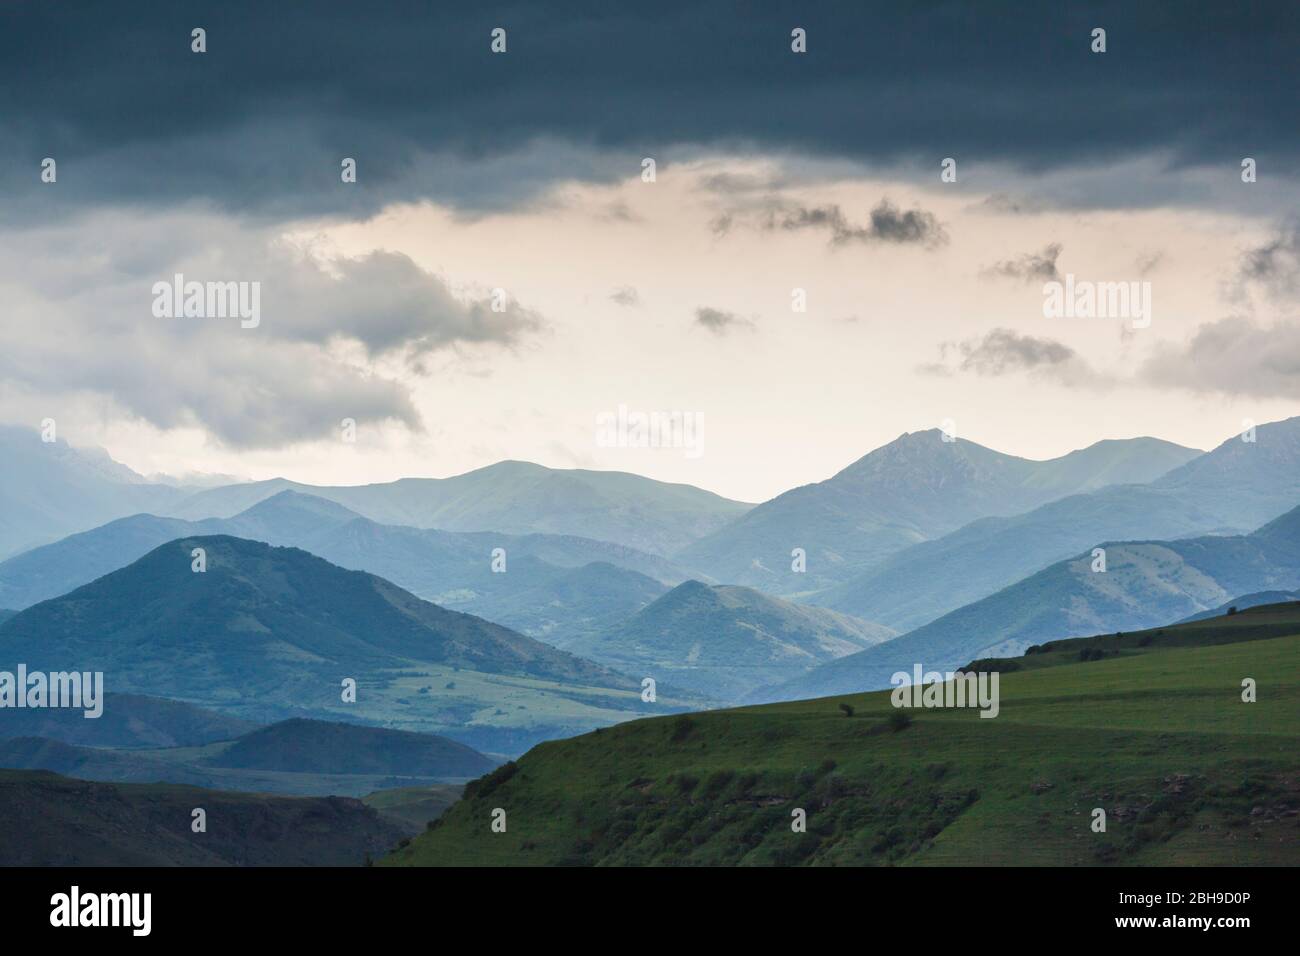 Armenia, Vorotan, Zangezur Mountains Stock Photo